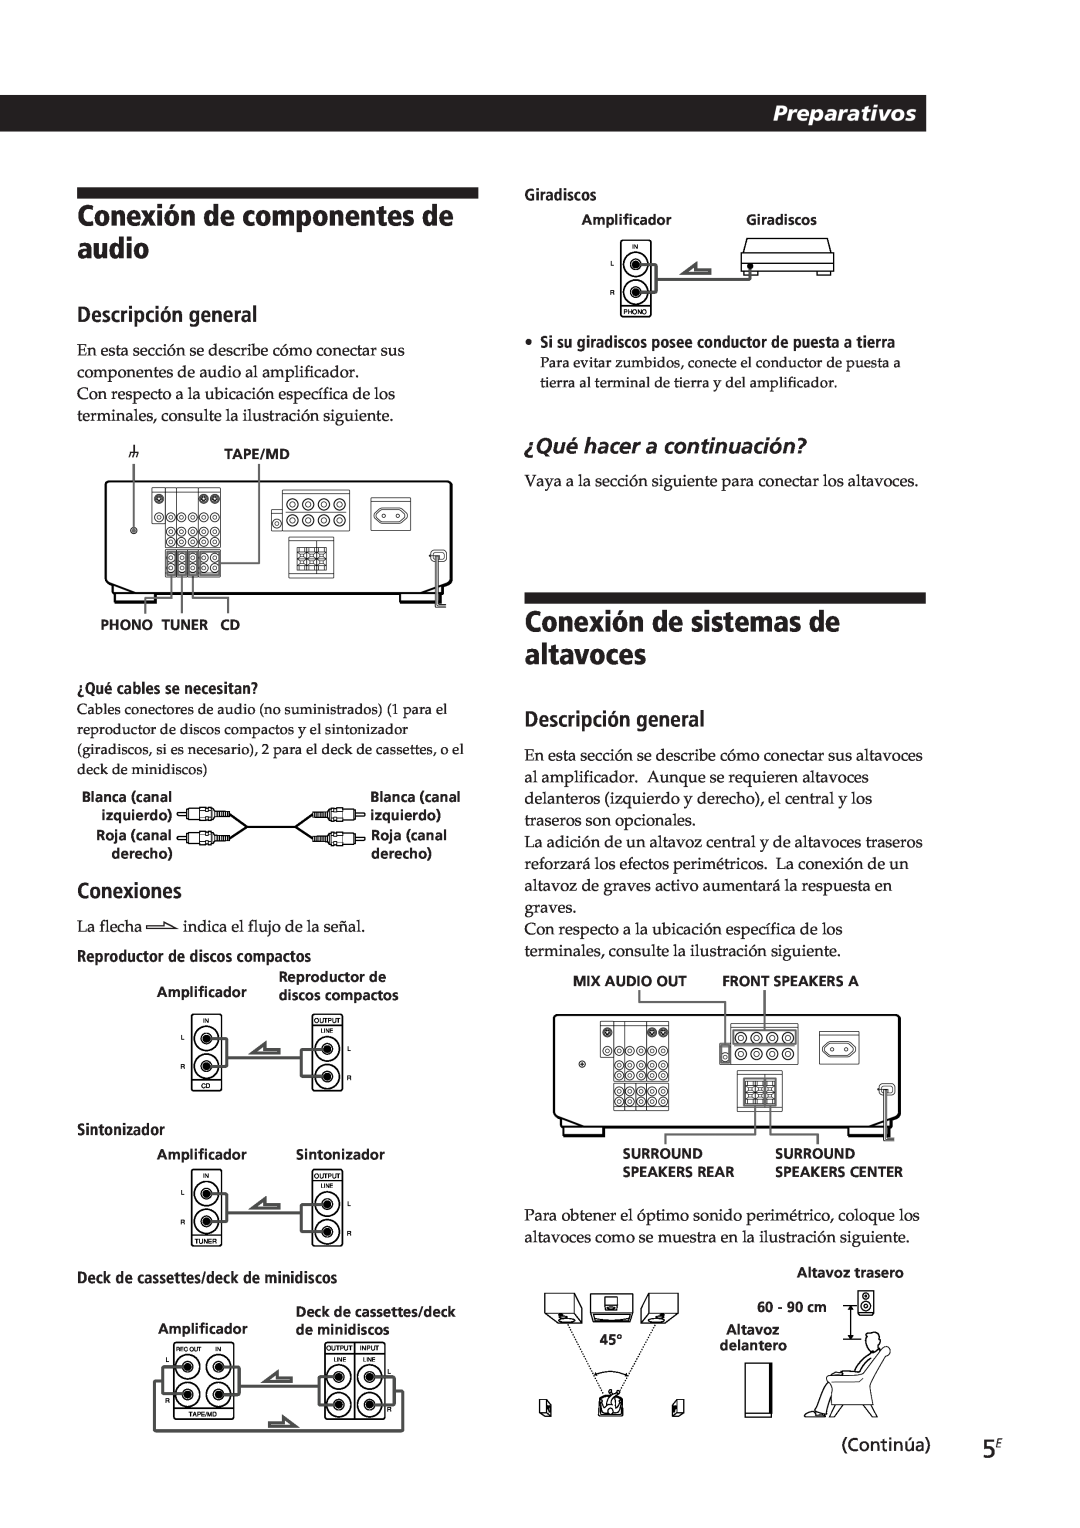 Sony TA-VE700 manual Conexión de componentes de audio, Conexión de sistemas de altavoces, Preparativos, Descripción general 